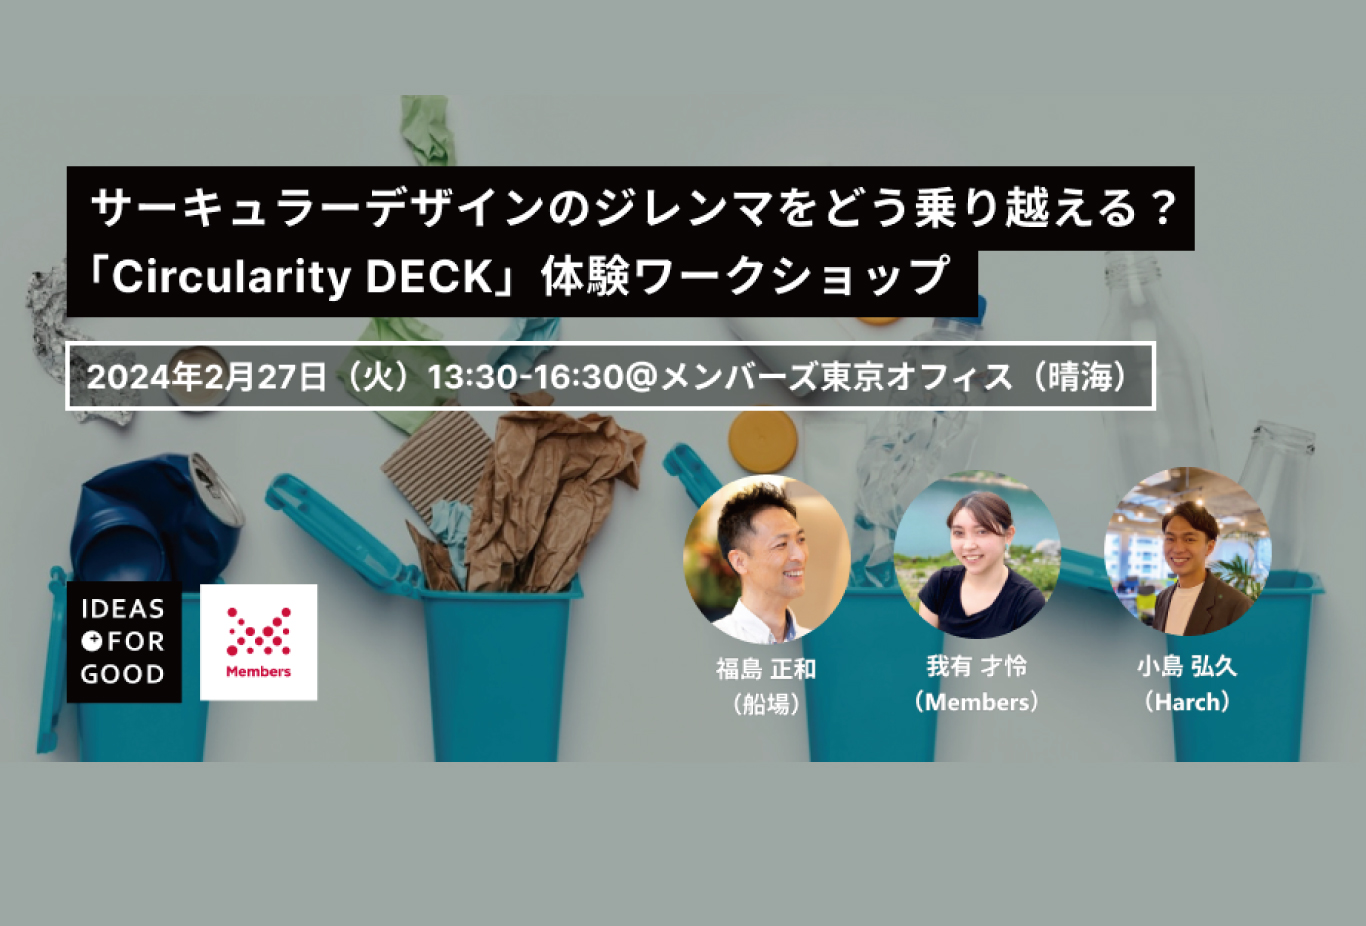 2月27日(火)IDEAS FOR GOODとメンバーズによる「Circularity DECK」体験ワークショップに当社社員が登壇します